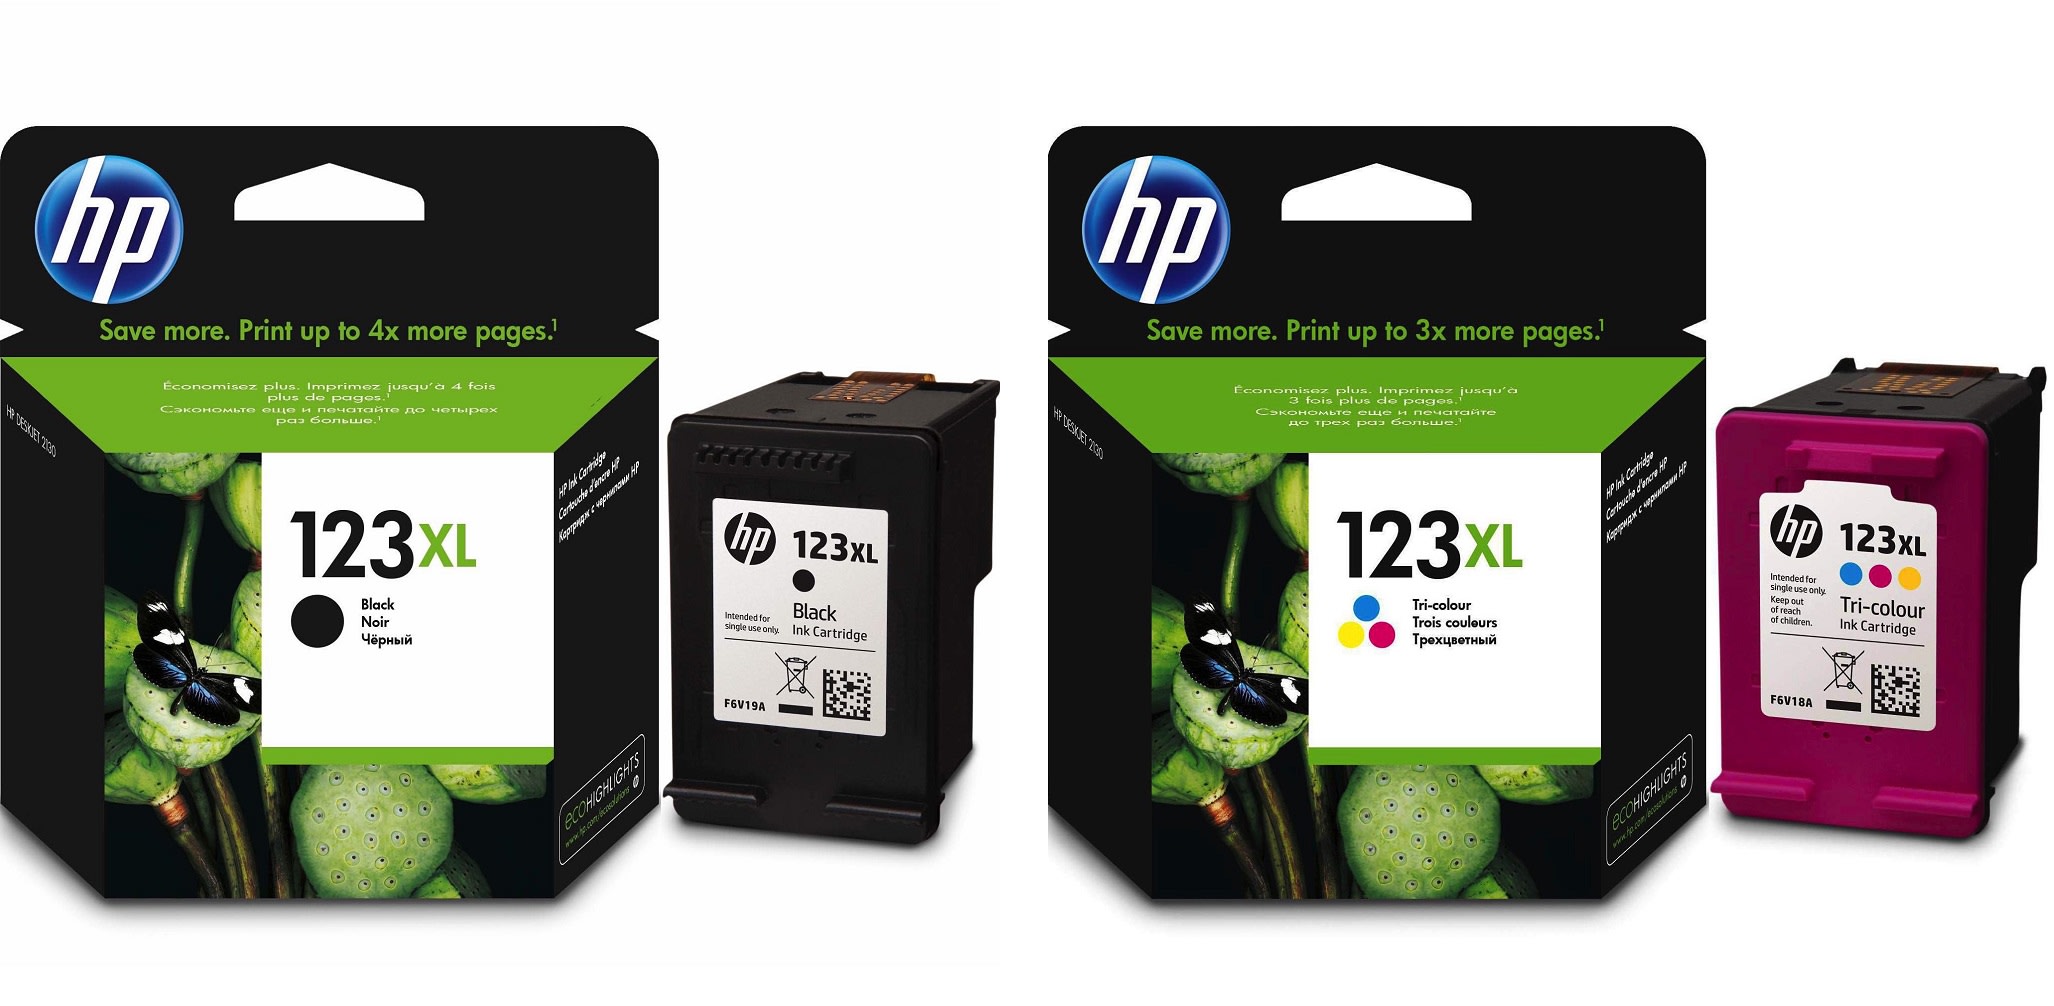 Картриджи hp 123XL для HP DJ 2620. Купить комплект оригинальных чернил.